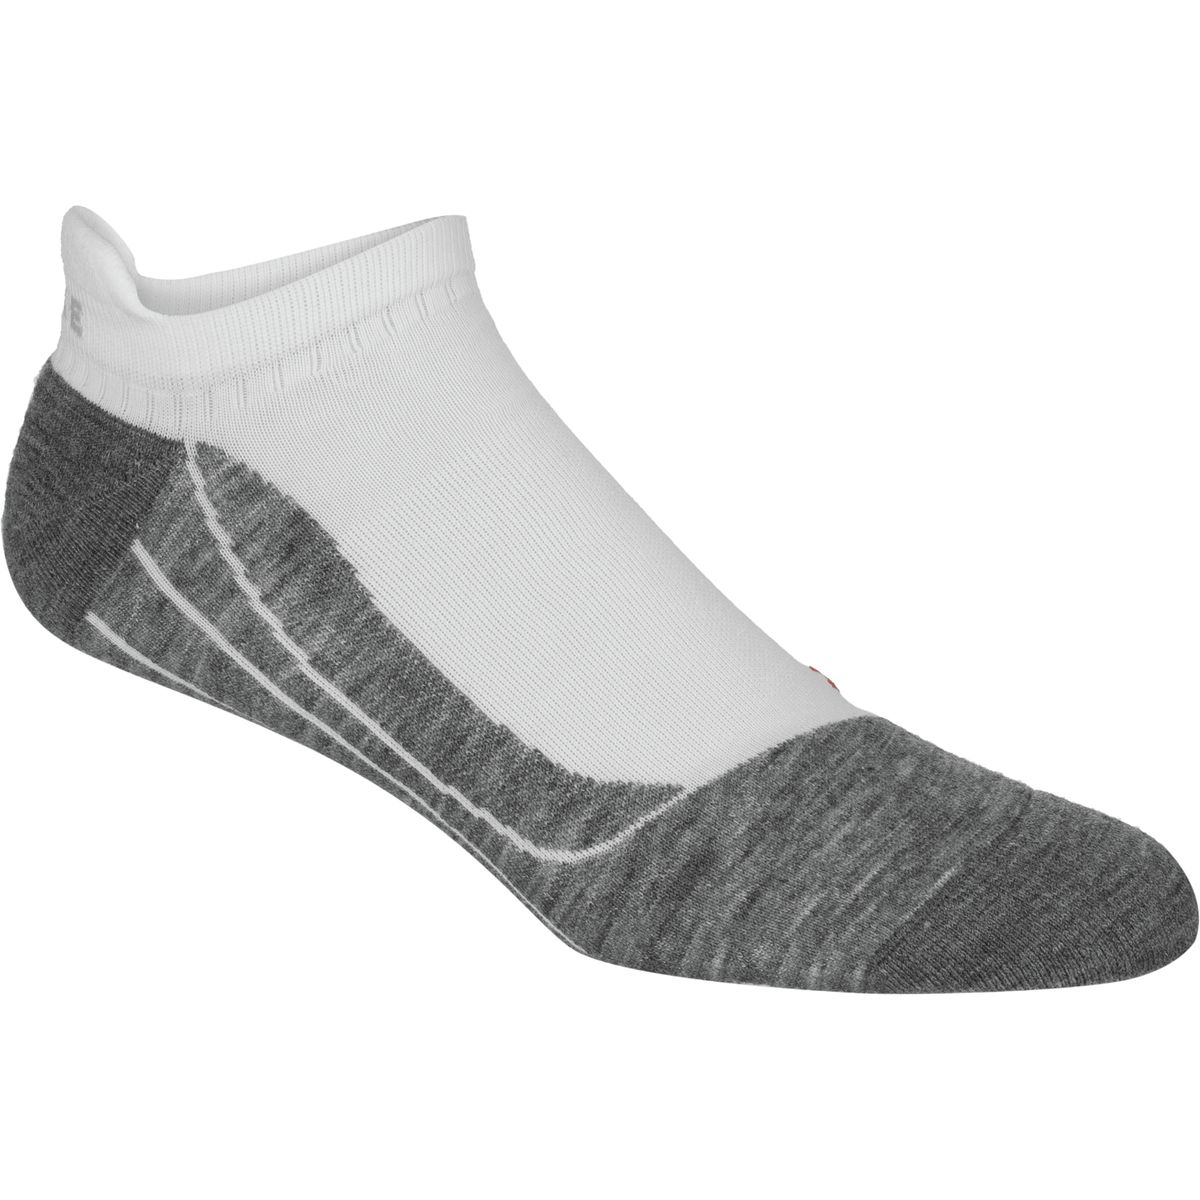 Falke RU 4 Invisible Socks - Men's | eBay